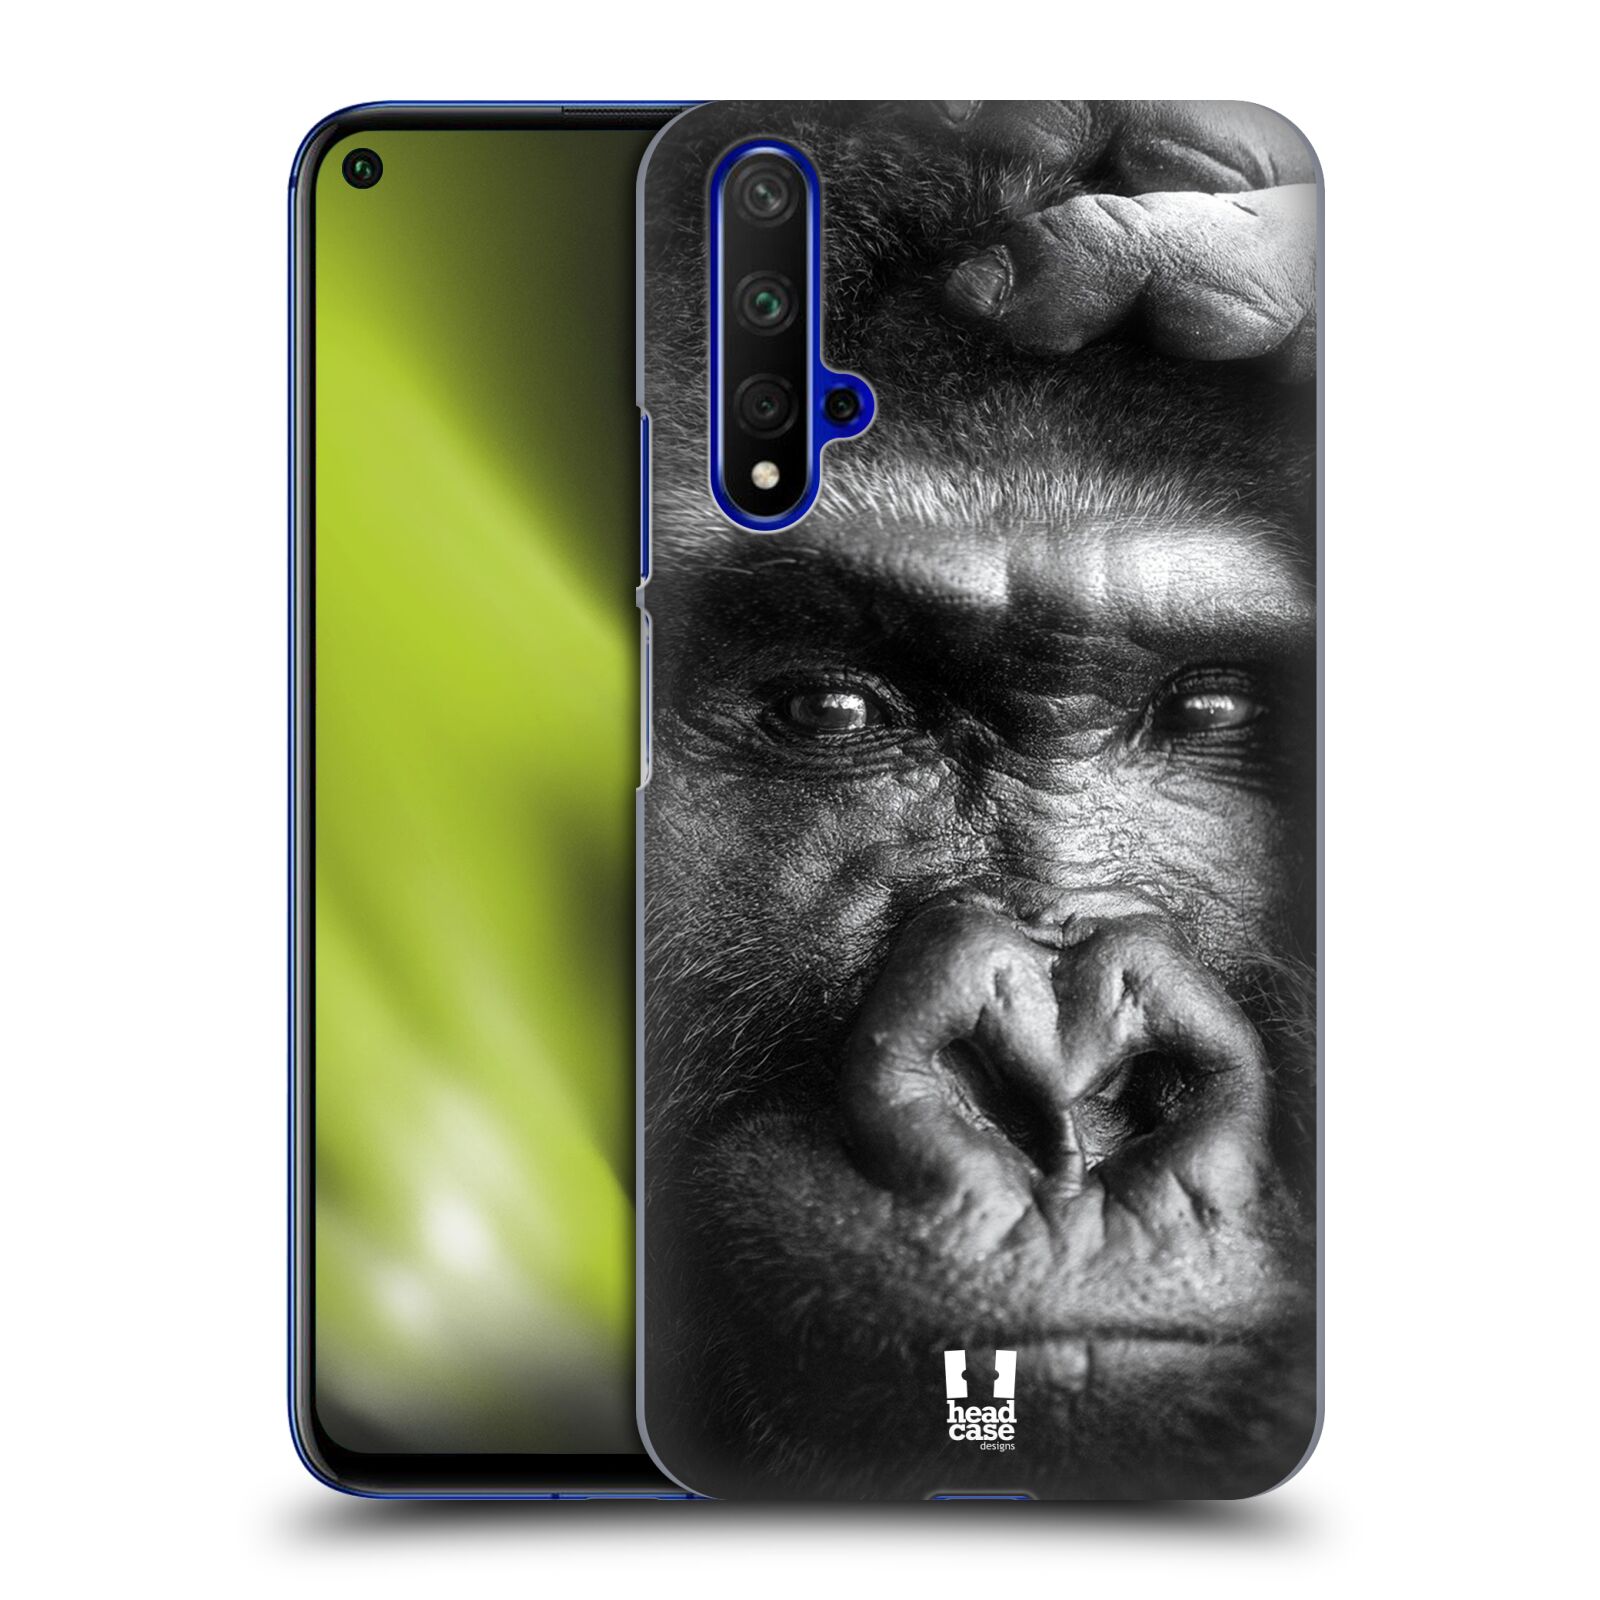 Pouzdro na mobil Honor 20 - HEAD CASE - vzor Divočina, Divoký život a zvířata foto GORILA TVÁŘ